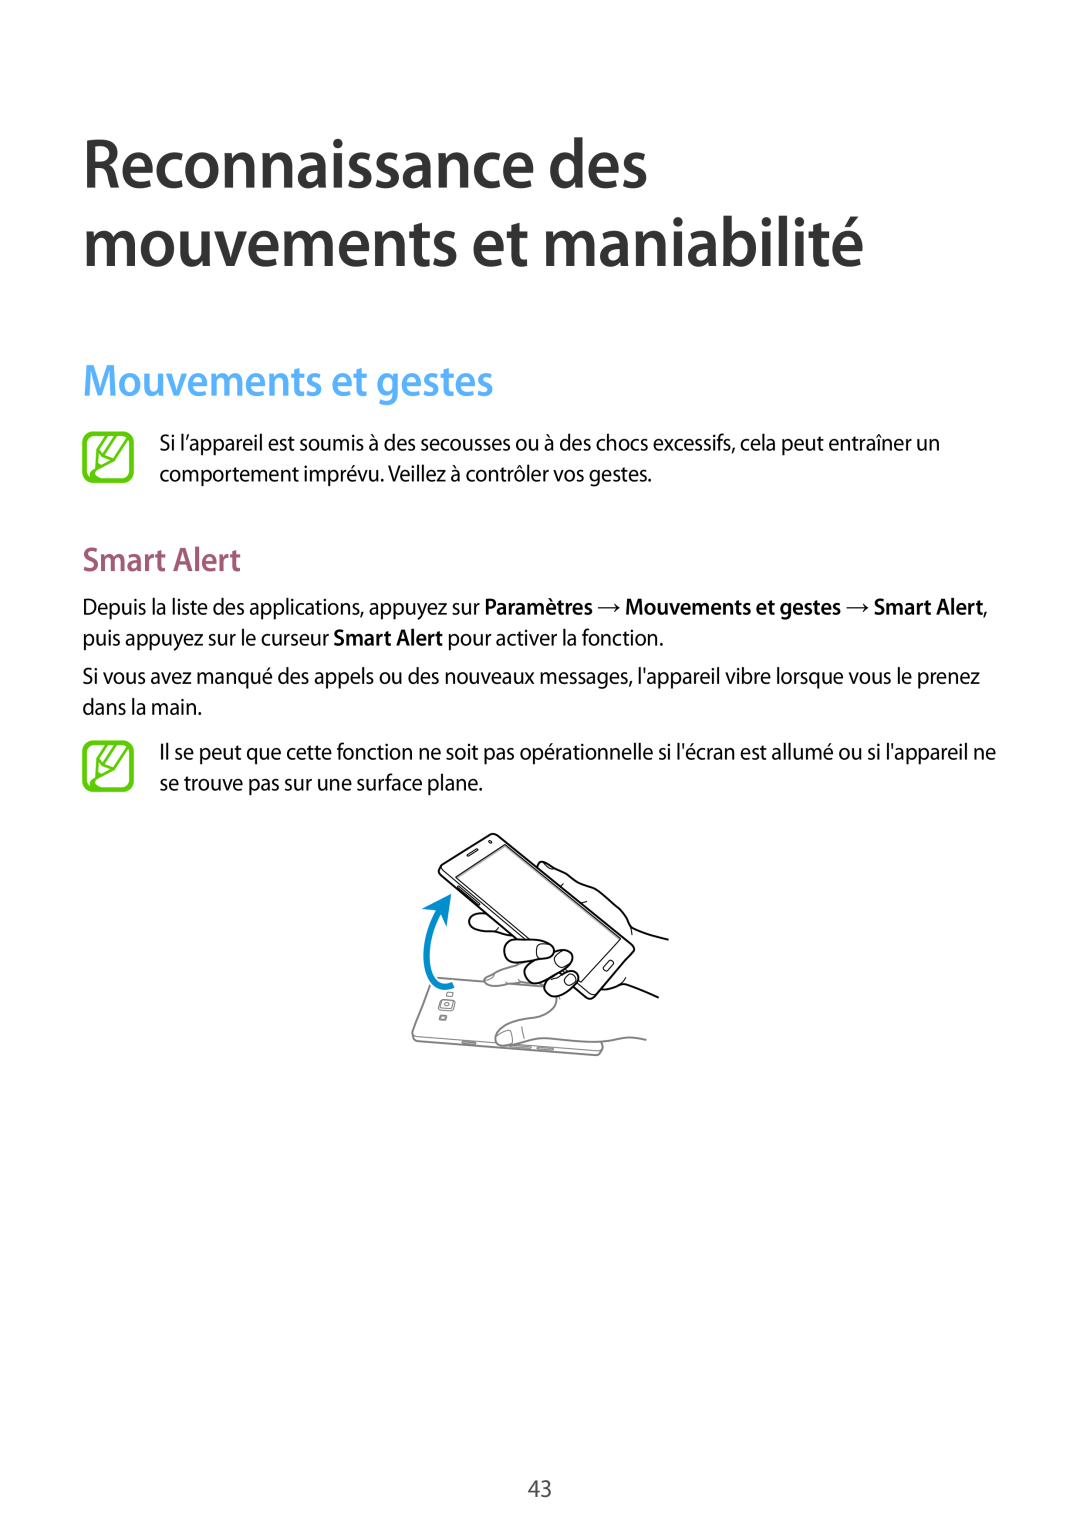 Samsung SM-A700FZWAXEF, SM-A700FZKAXEF Mouvements et gestes, Smart Alert, Reconnaissance des mouvements et maniabilité 